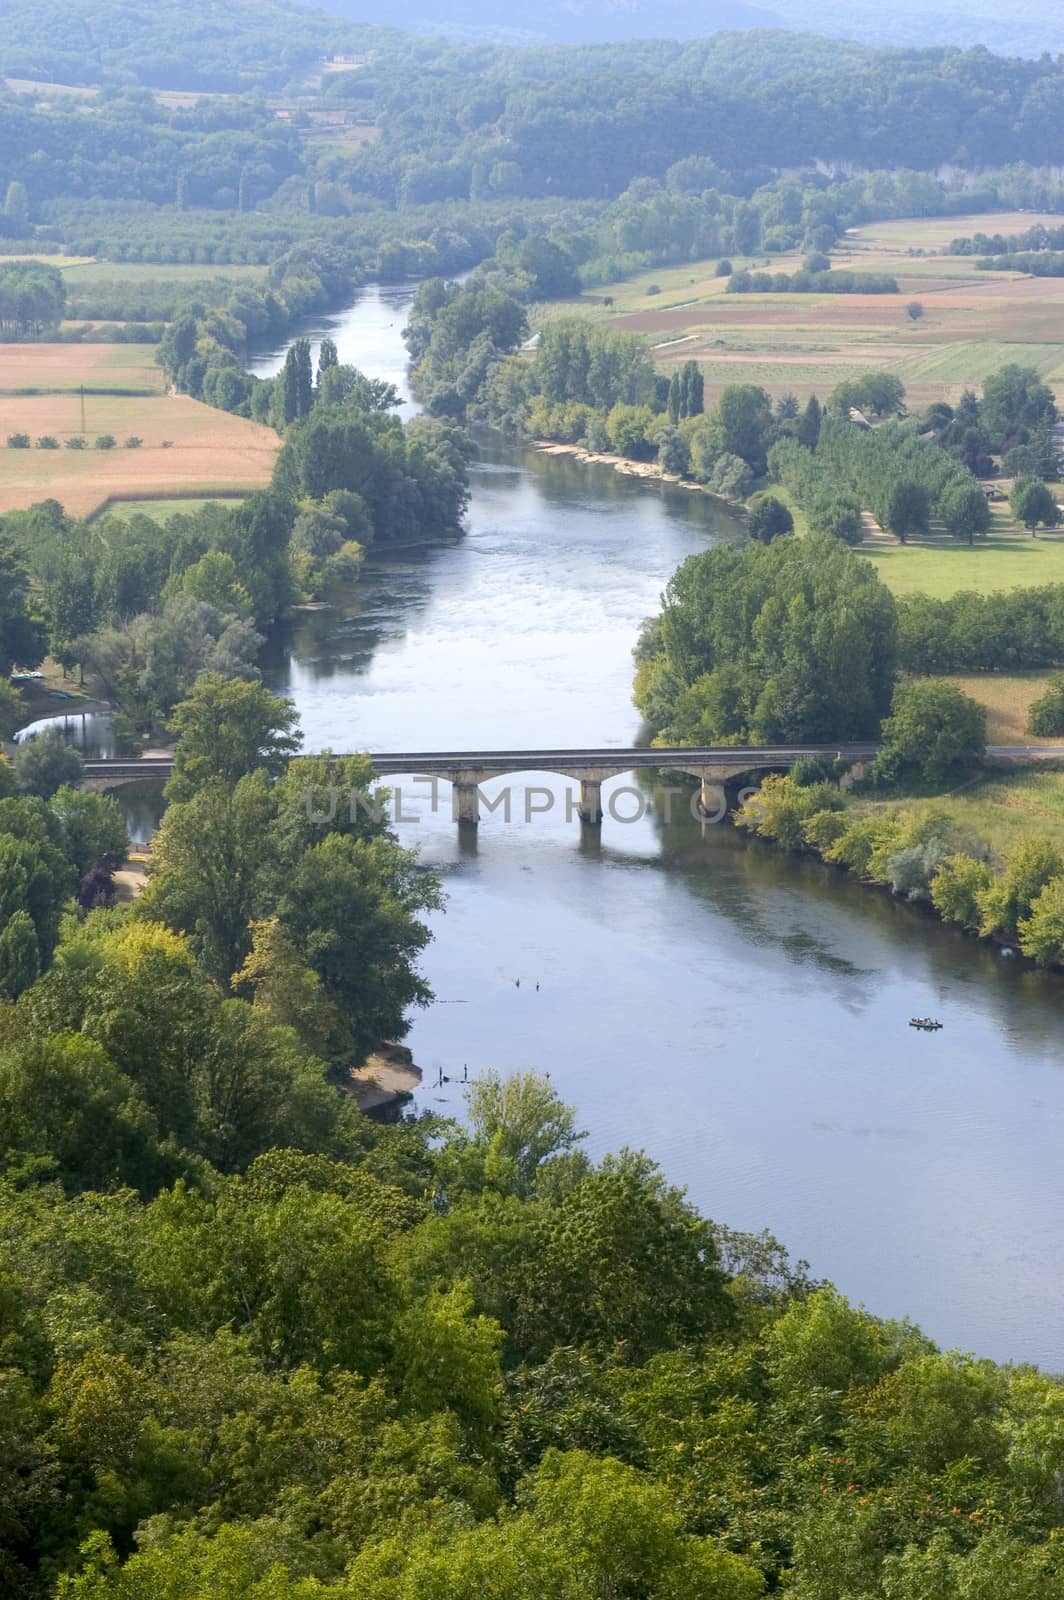 Castelnaud bridge over the Dordogne